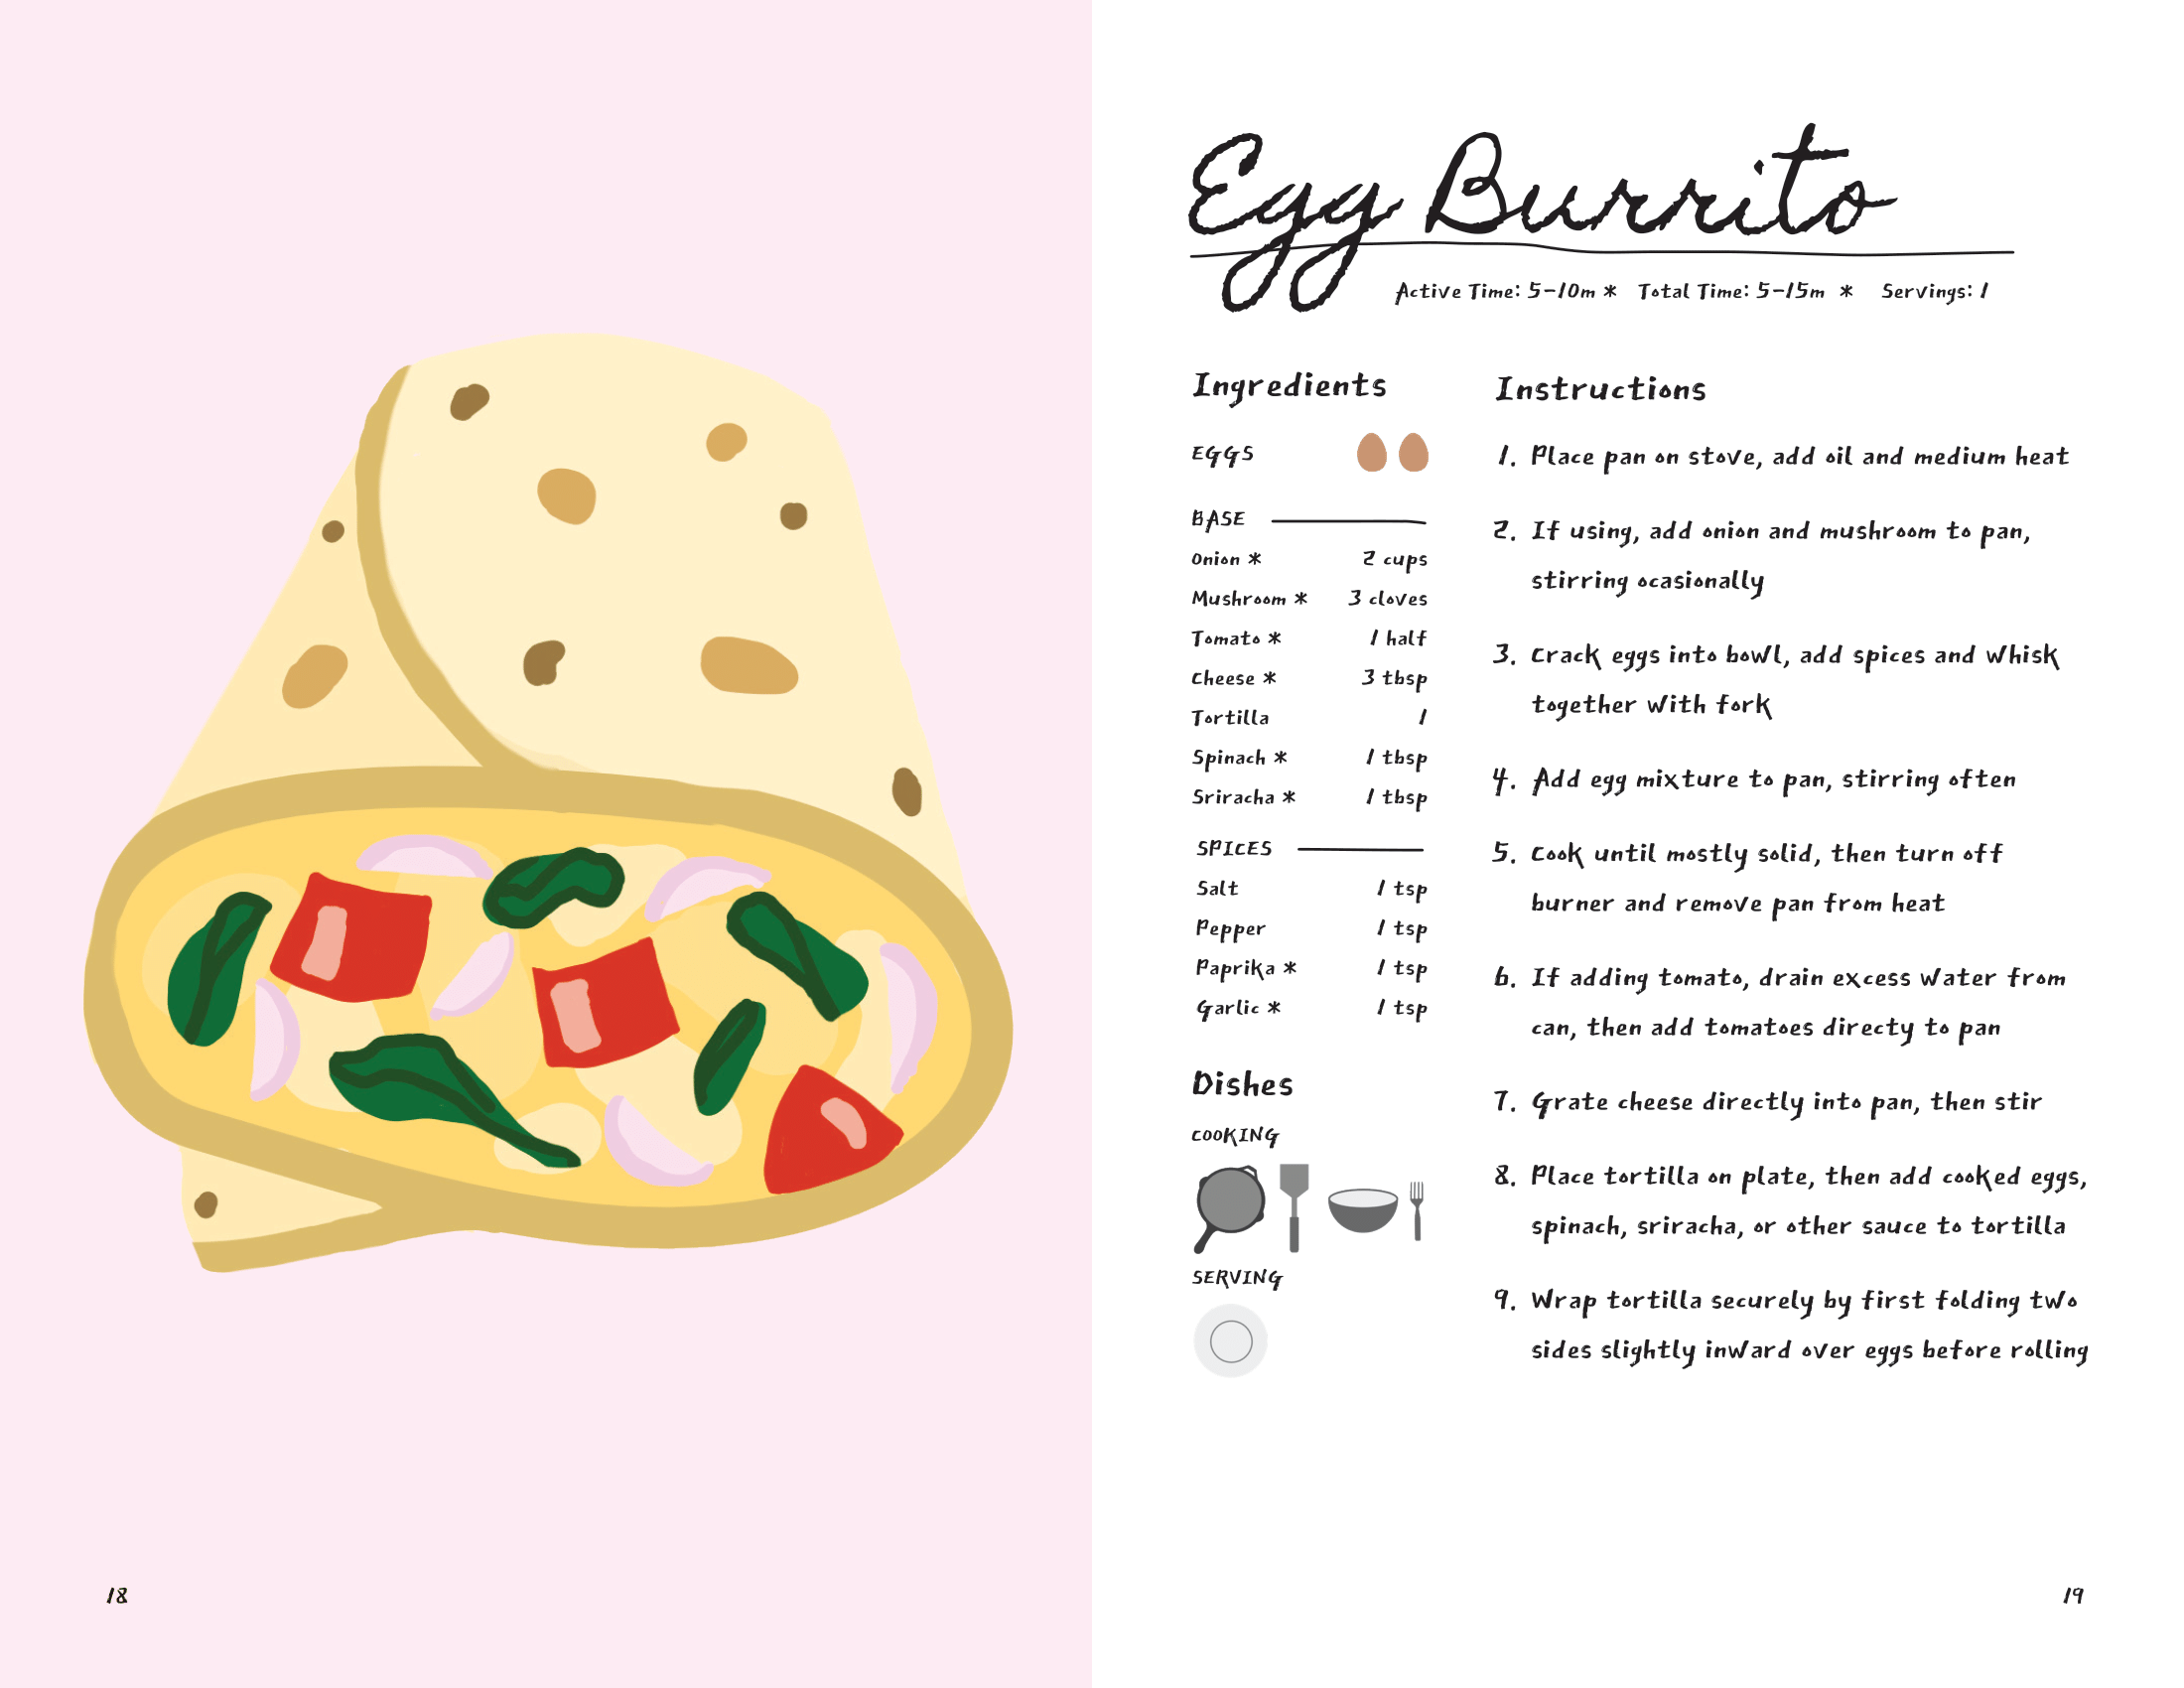 Recipe for Egg Burrito